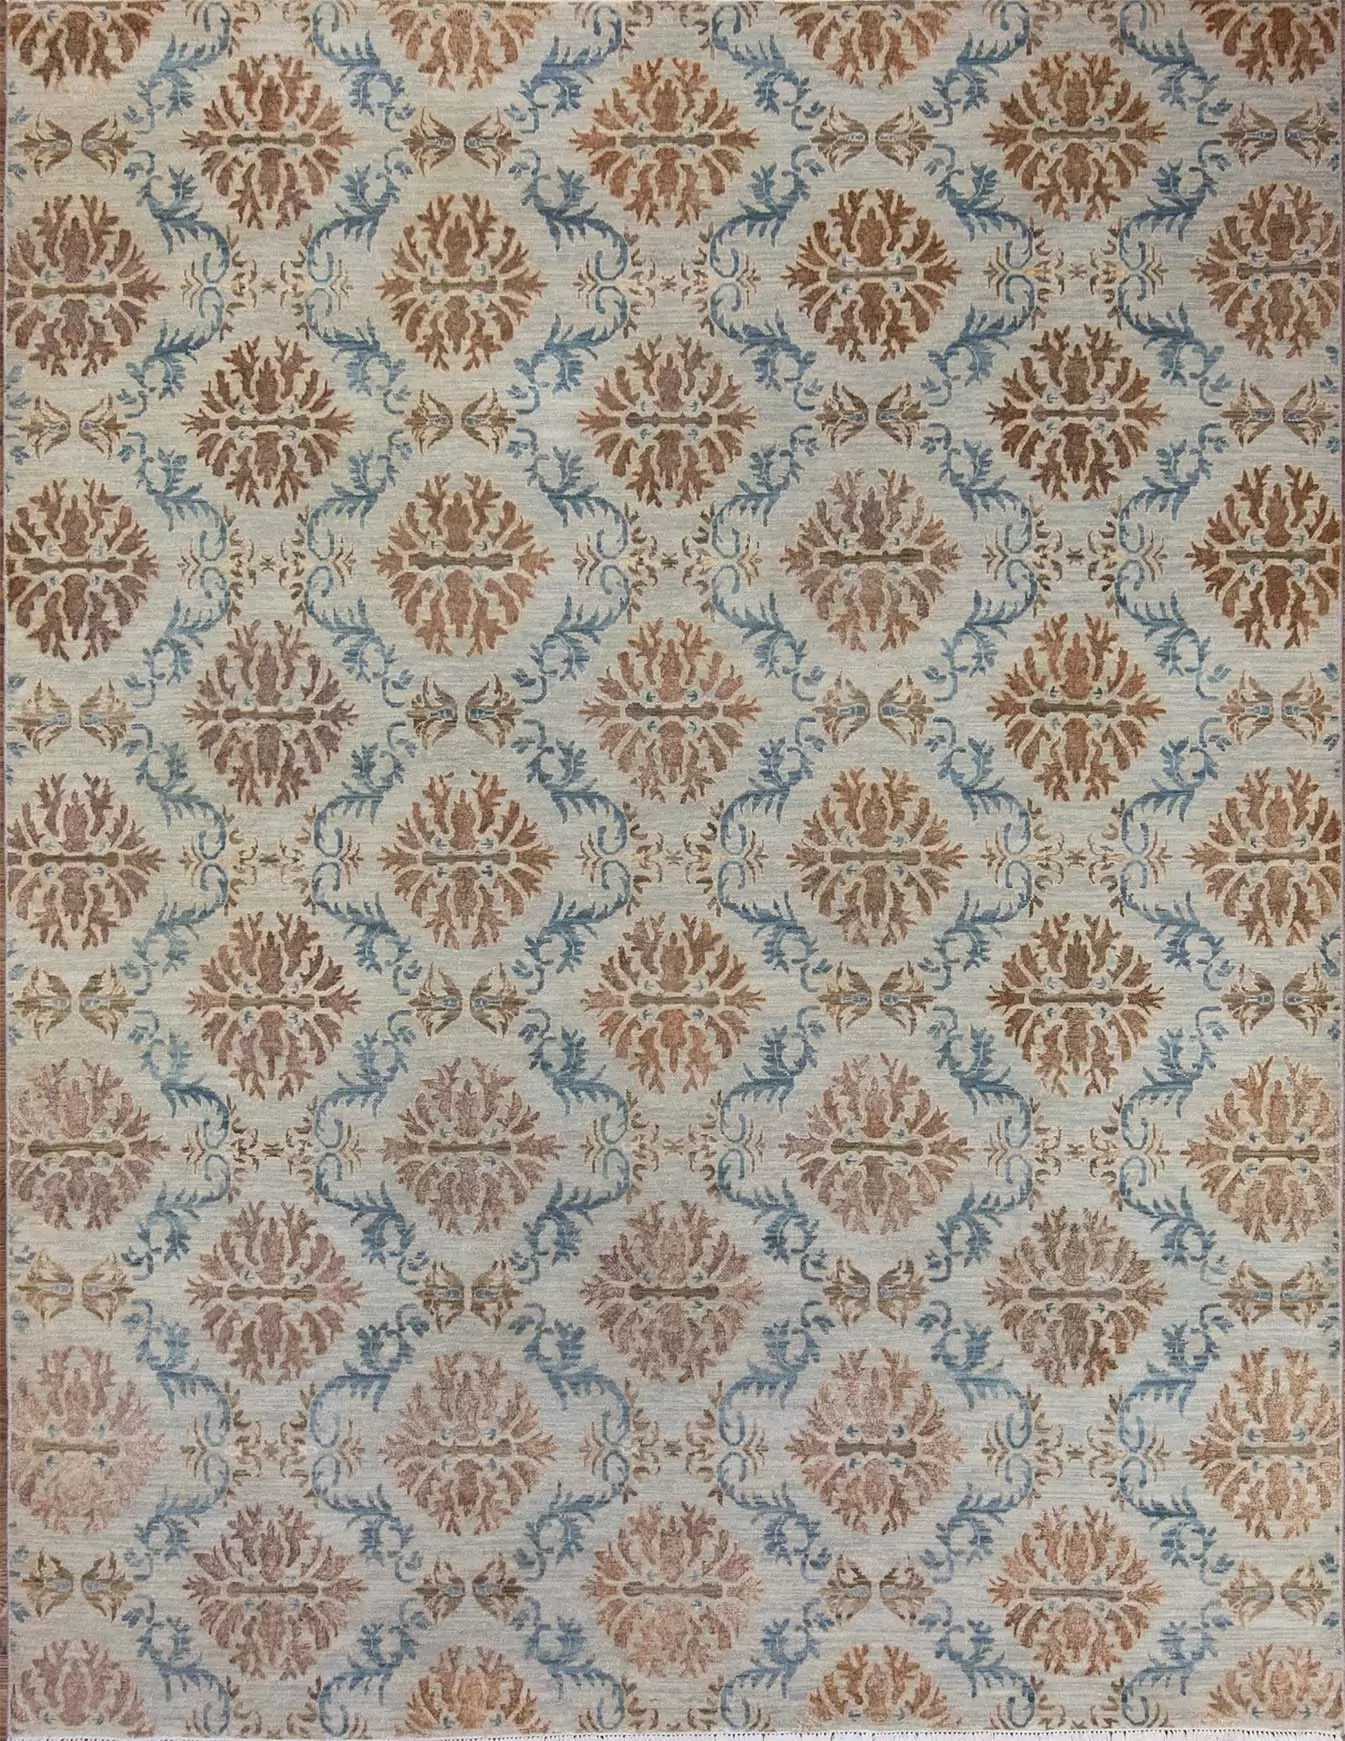 8x10 modern area rug. A distinctive designer area rug in beige color.